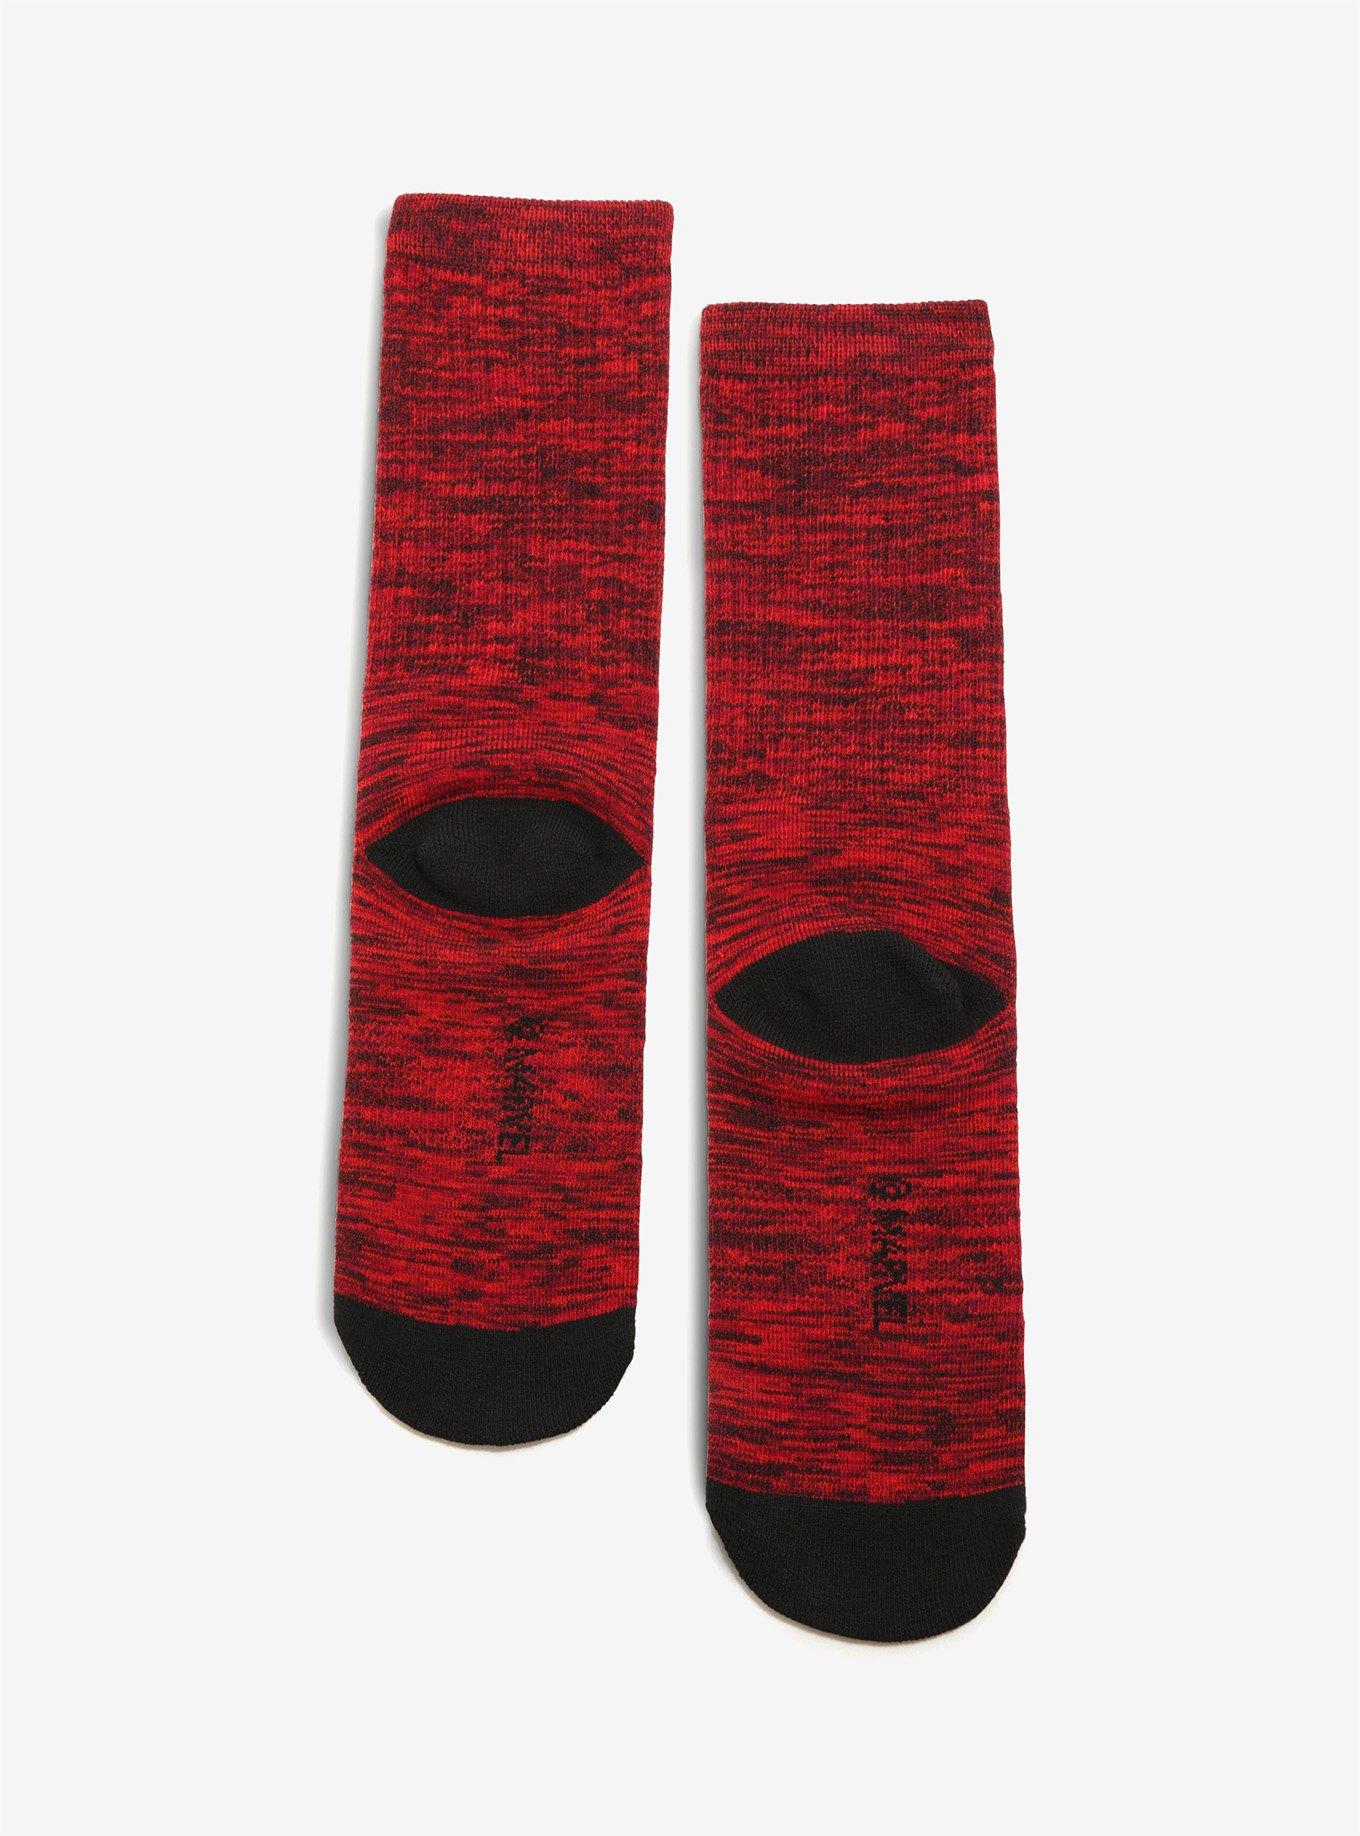 Marvel Deadpool Embroidered Crew Socks, , alternate